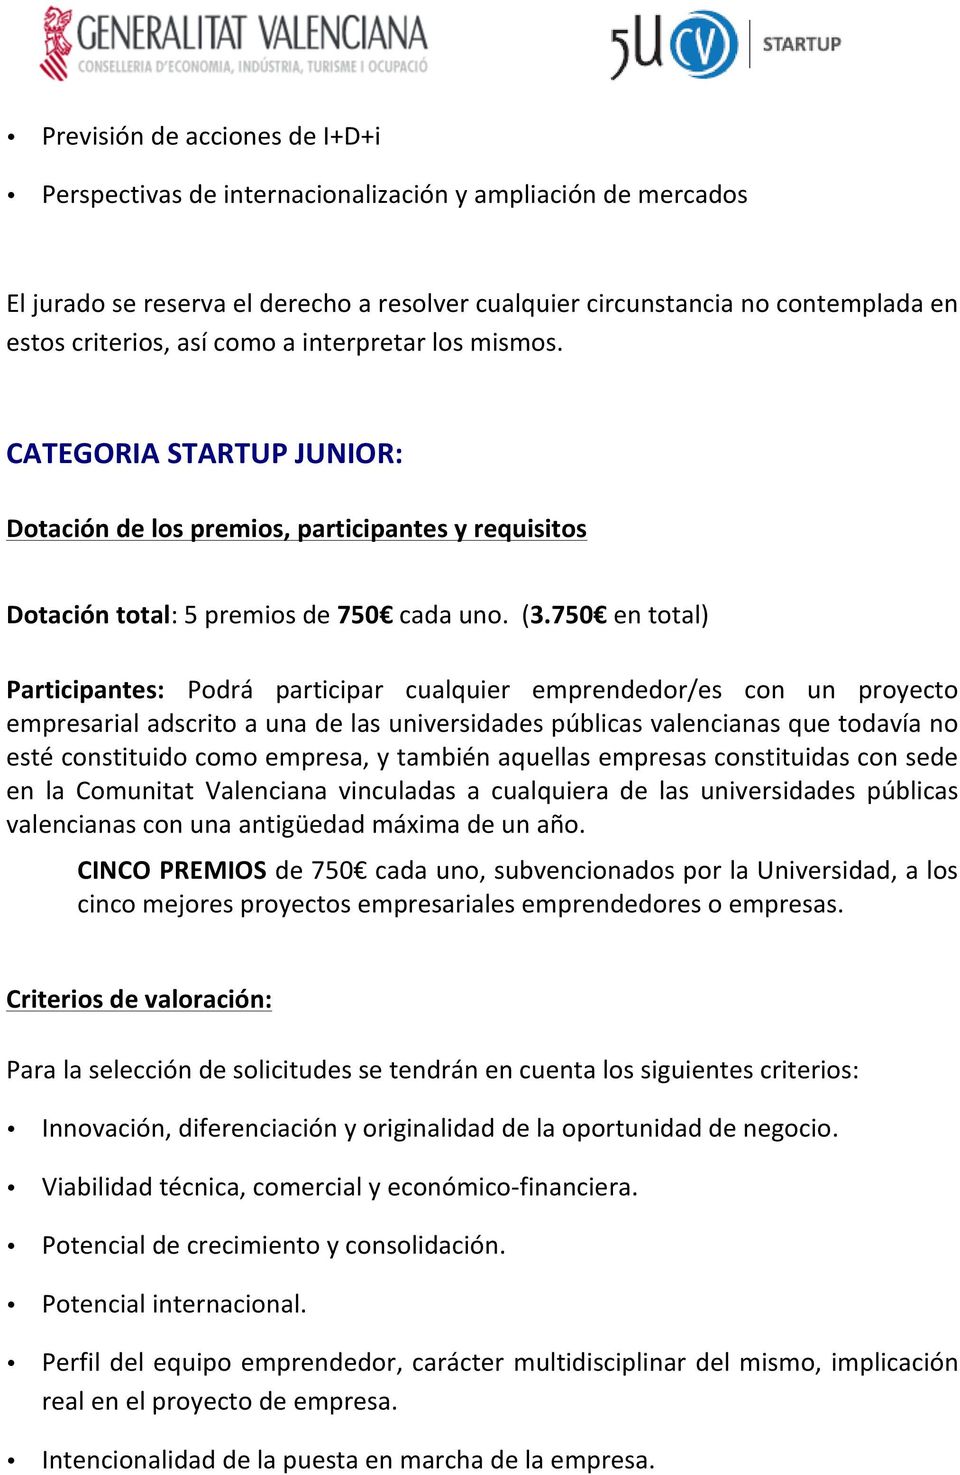 750 en total) Participantes: Podrá participar cualquier emprendedor/es con un proyecto empresarial adscrito a una de las universidades públicas valencianas que todavía no esté constituido como